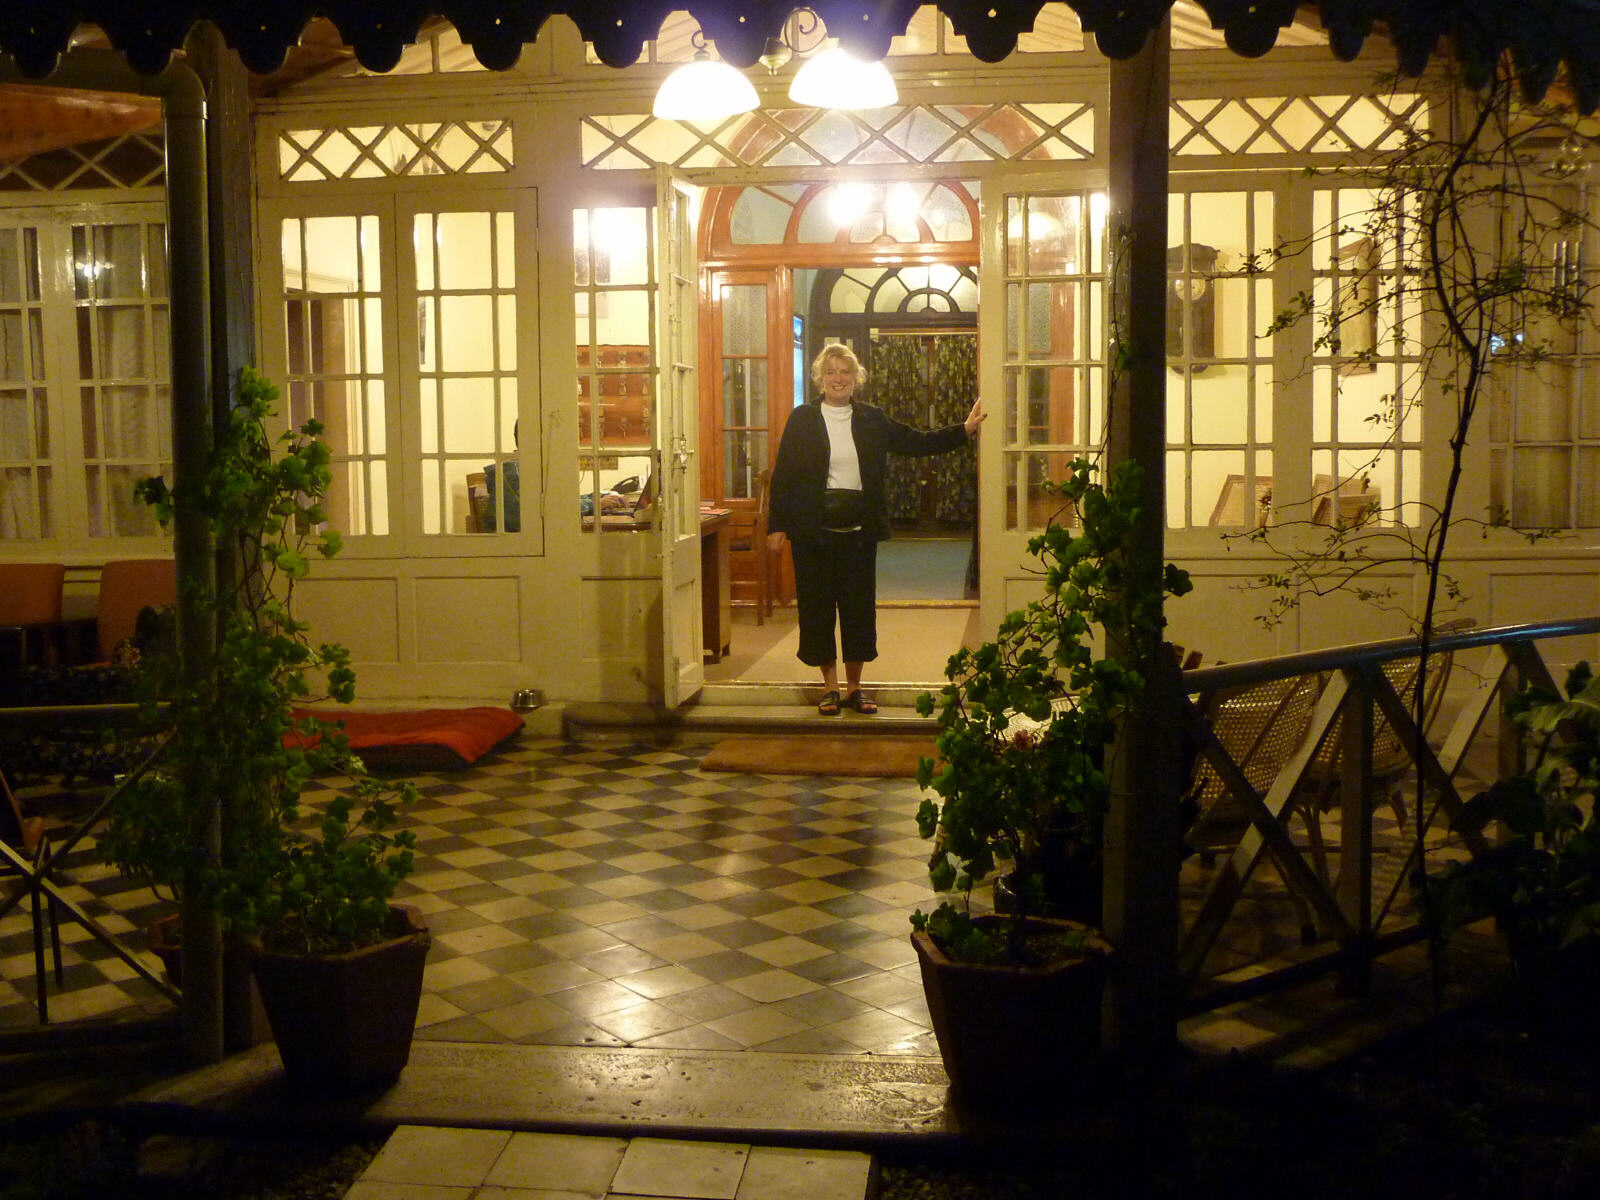 Padmini Nivas heritage hotel in Mussoorie, India